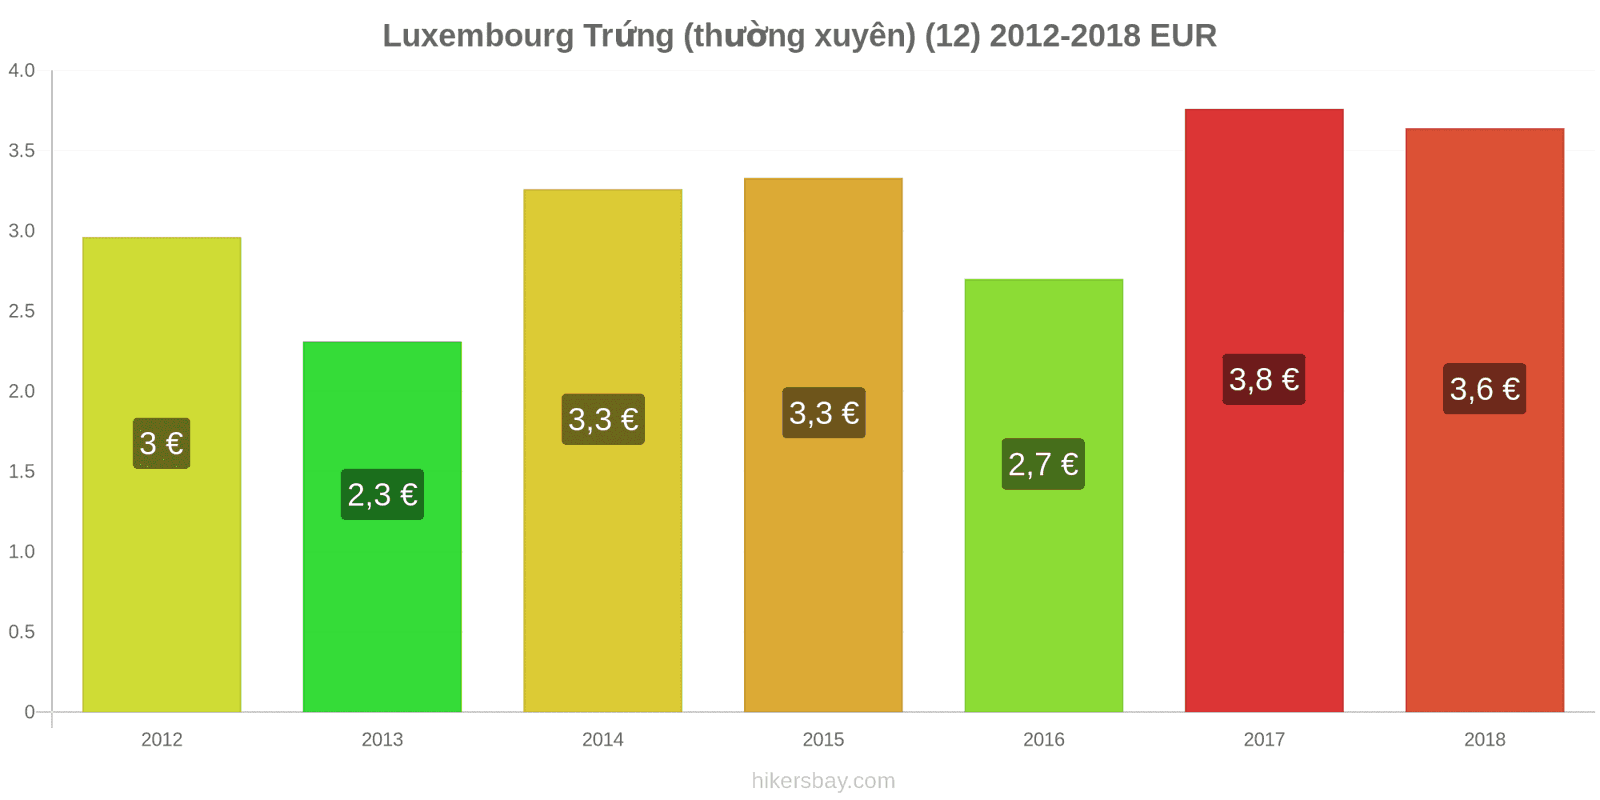 Luxembourg thay đổi giá cả Trứng (bình thường) (12) hikersbay.com